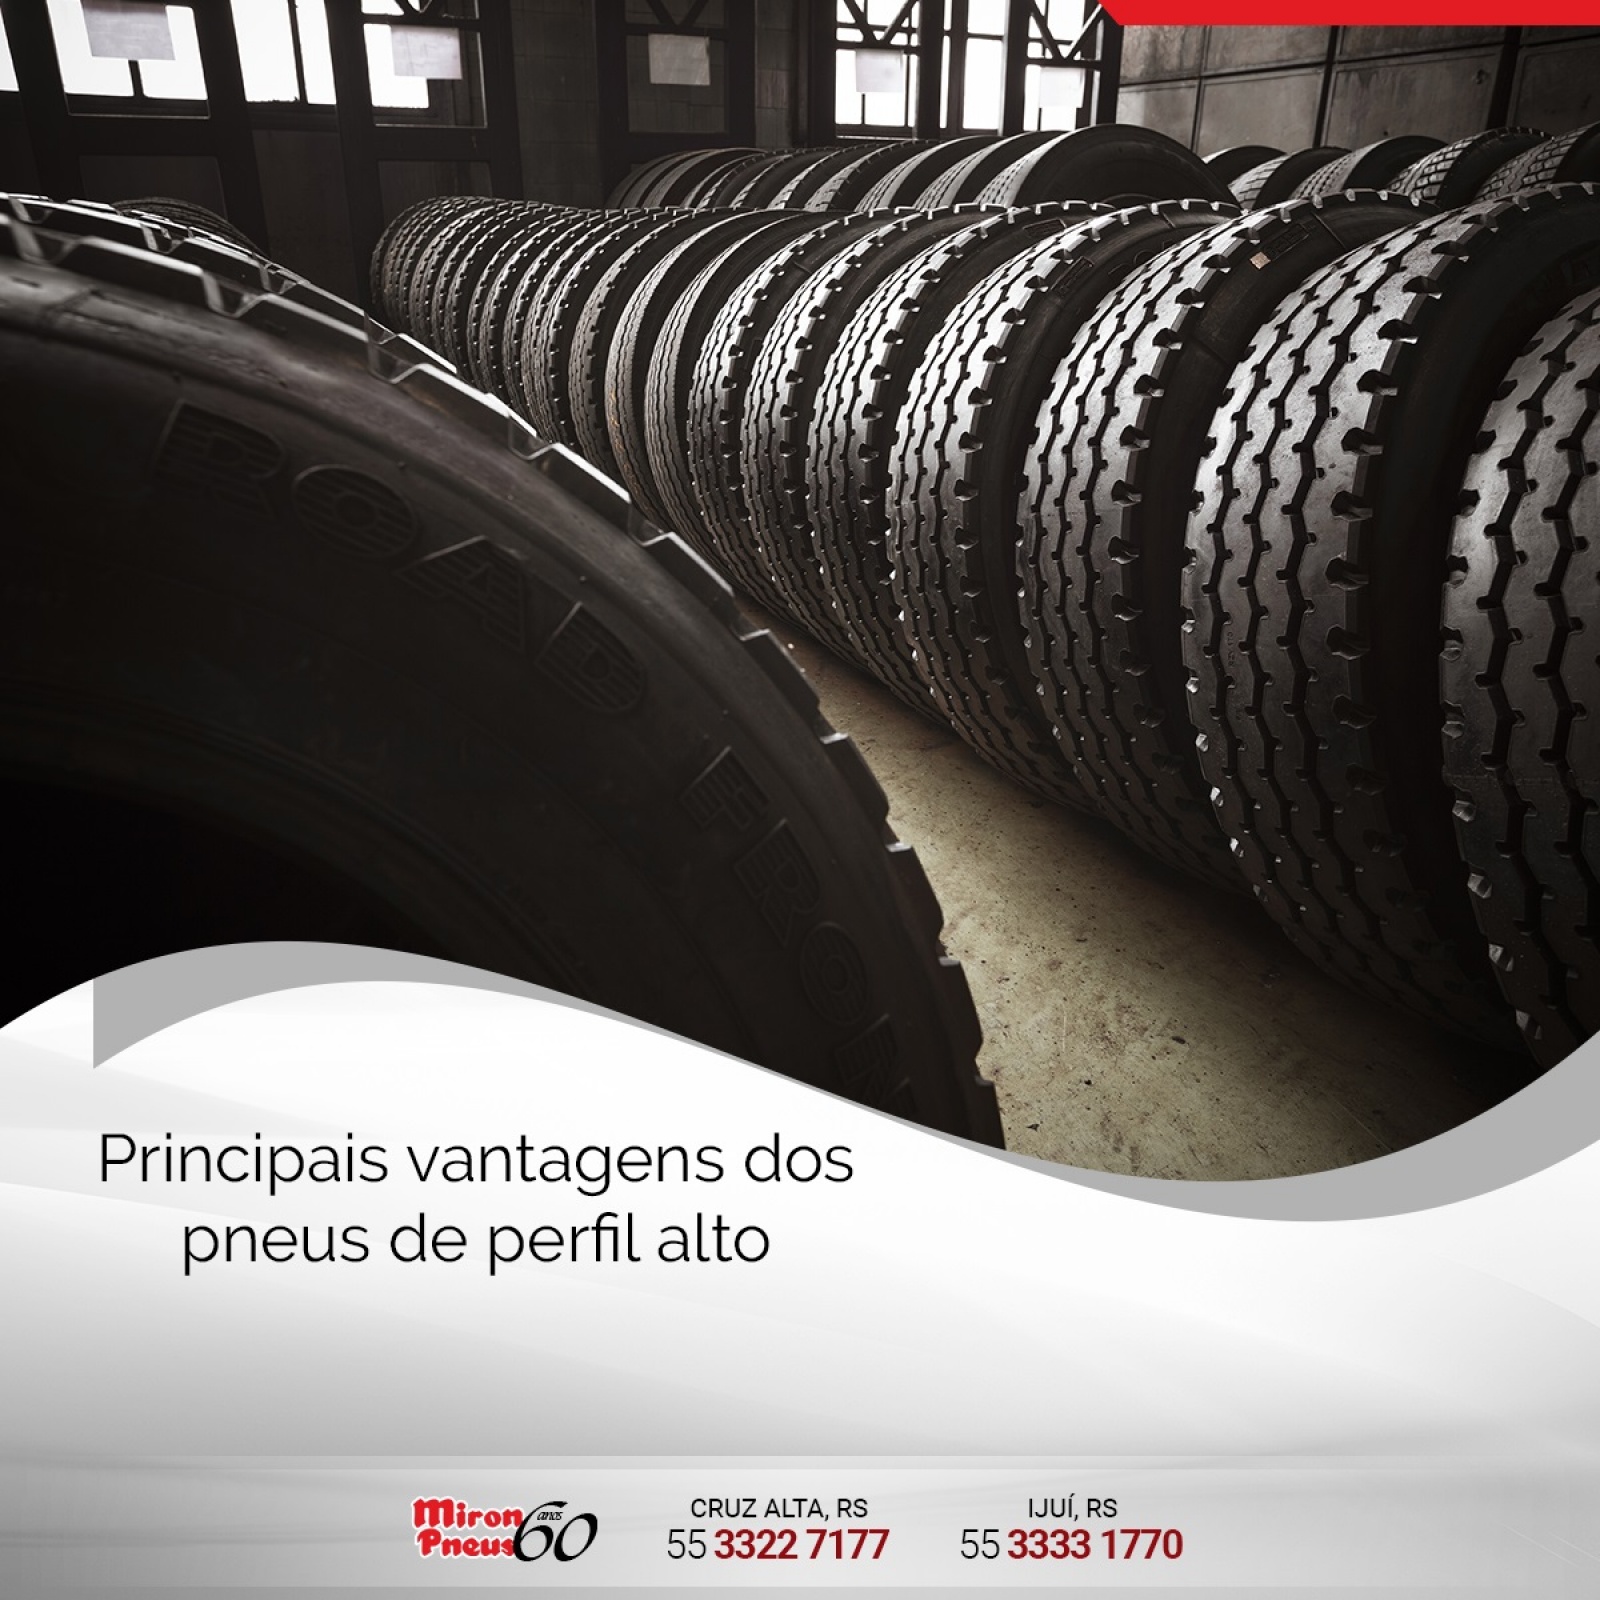 Principais vantagens dos pneus de perfil alto